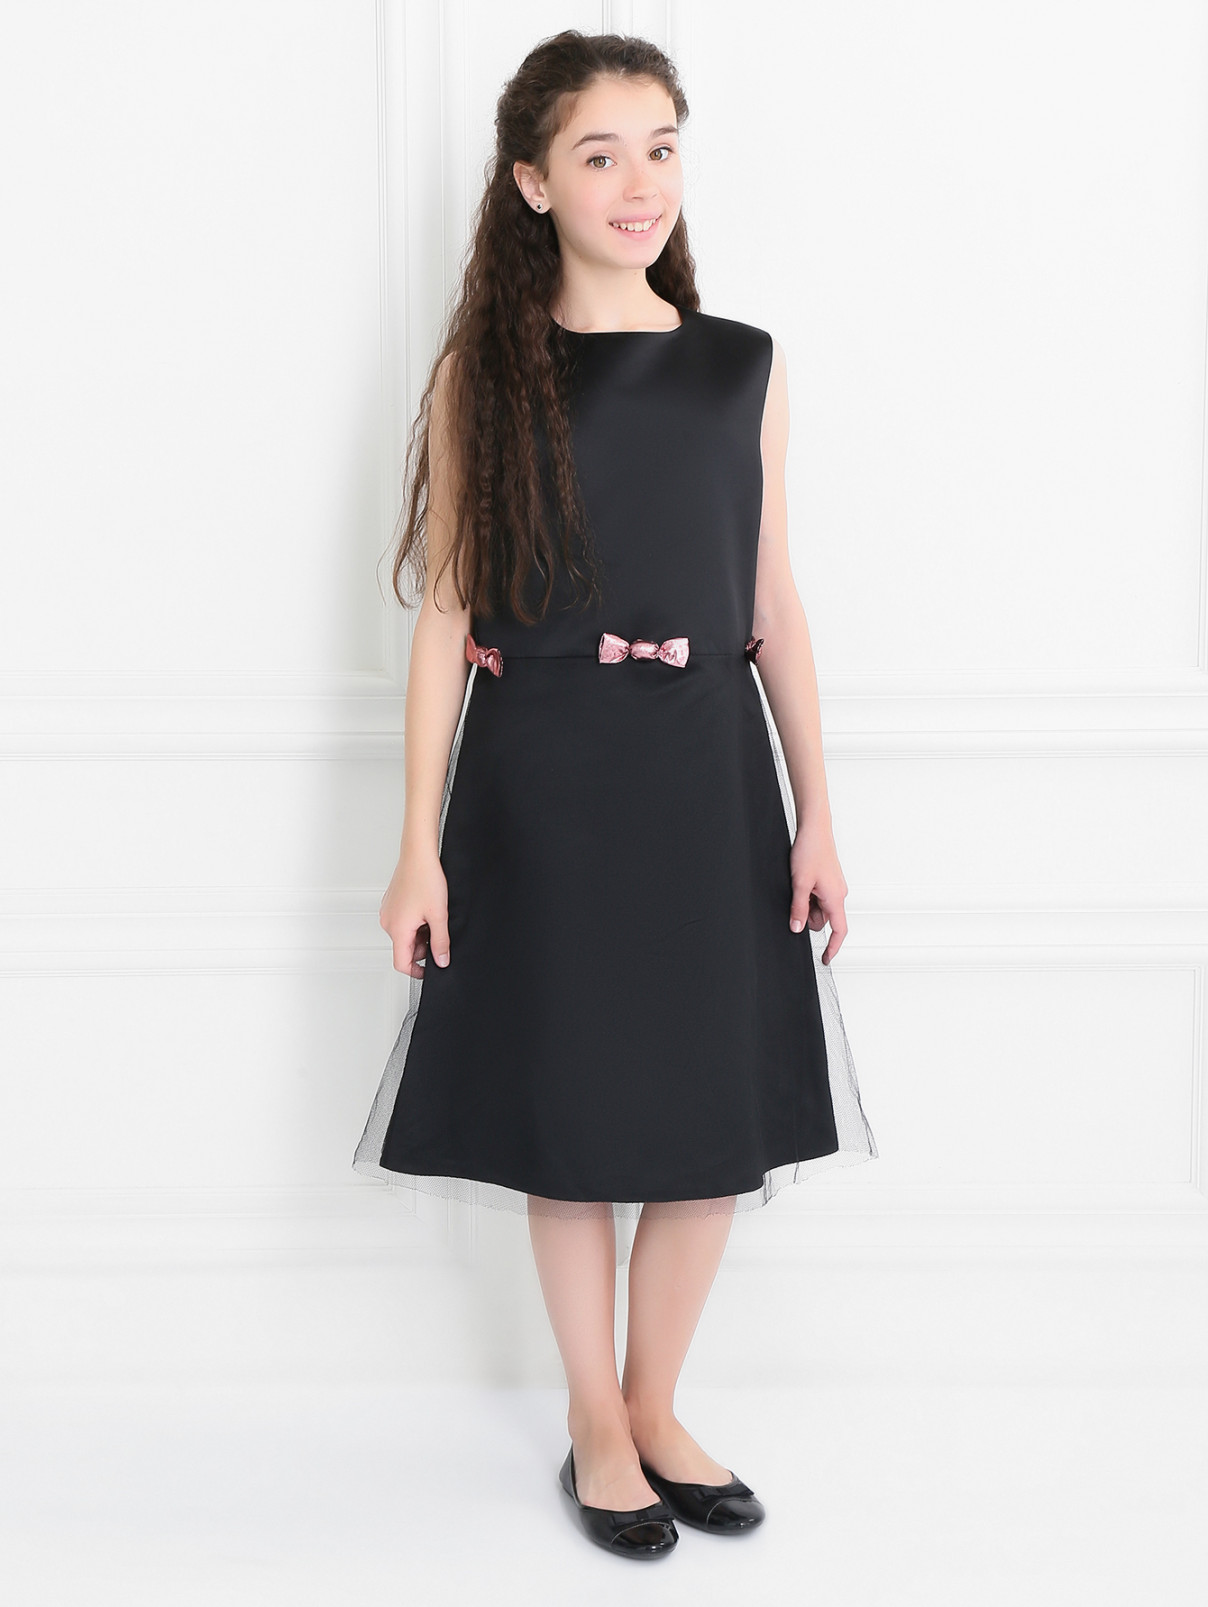 Платье-футляр из шелковистого материала с бантиками Suzanne Ermann  –  Модель Общий вид  – Цвет:  Черный